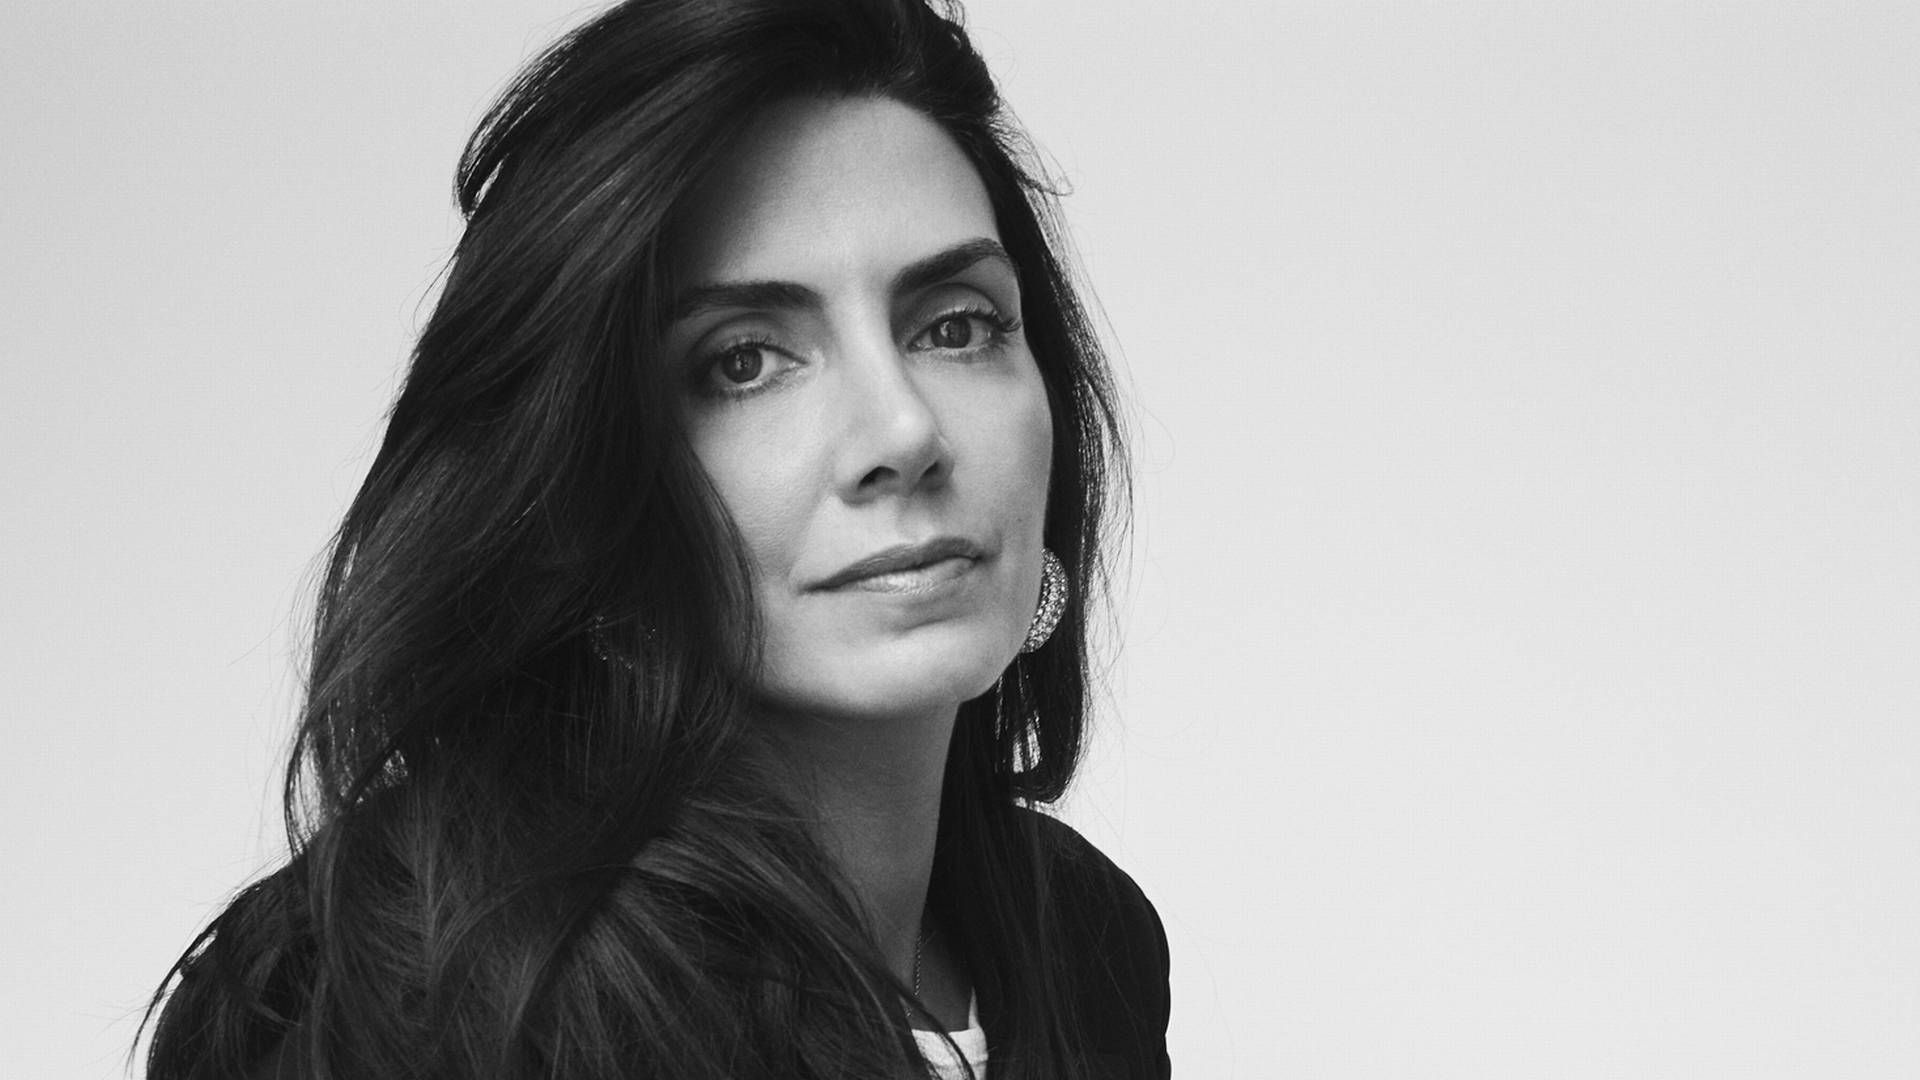 Det danske modebrand hentede i april Laura du Rusquec ind som ny direktør. Hun kommer til at lede Ganni fra modehusets kontor i Paris. | Foto: Ganni